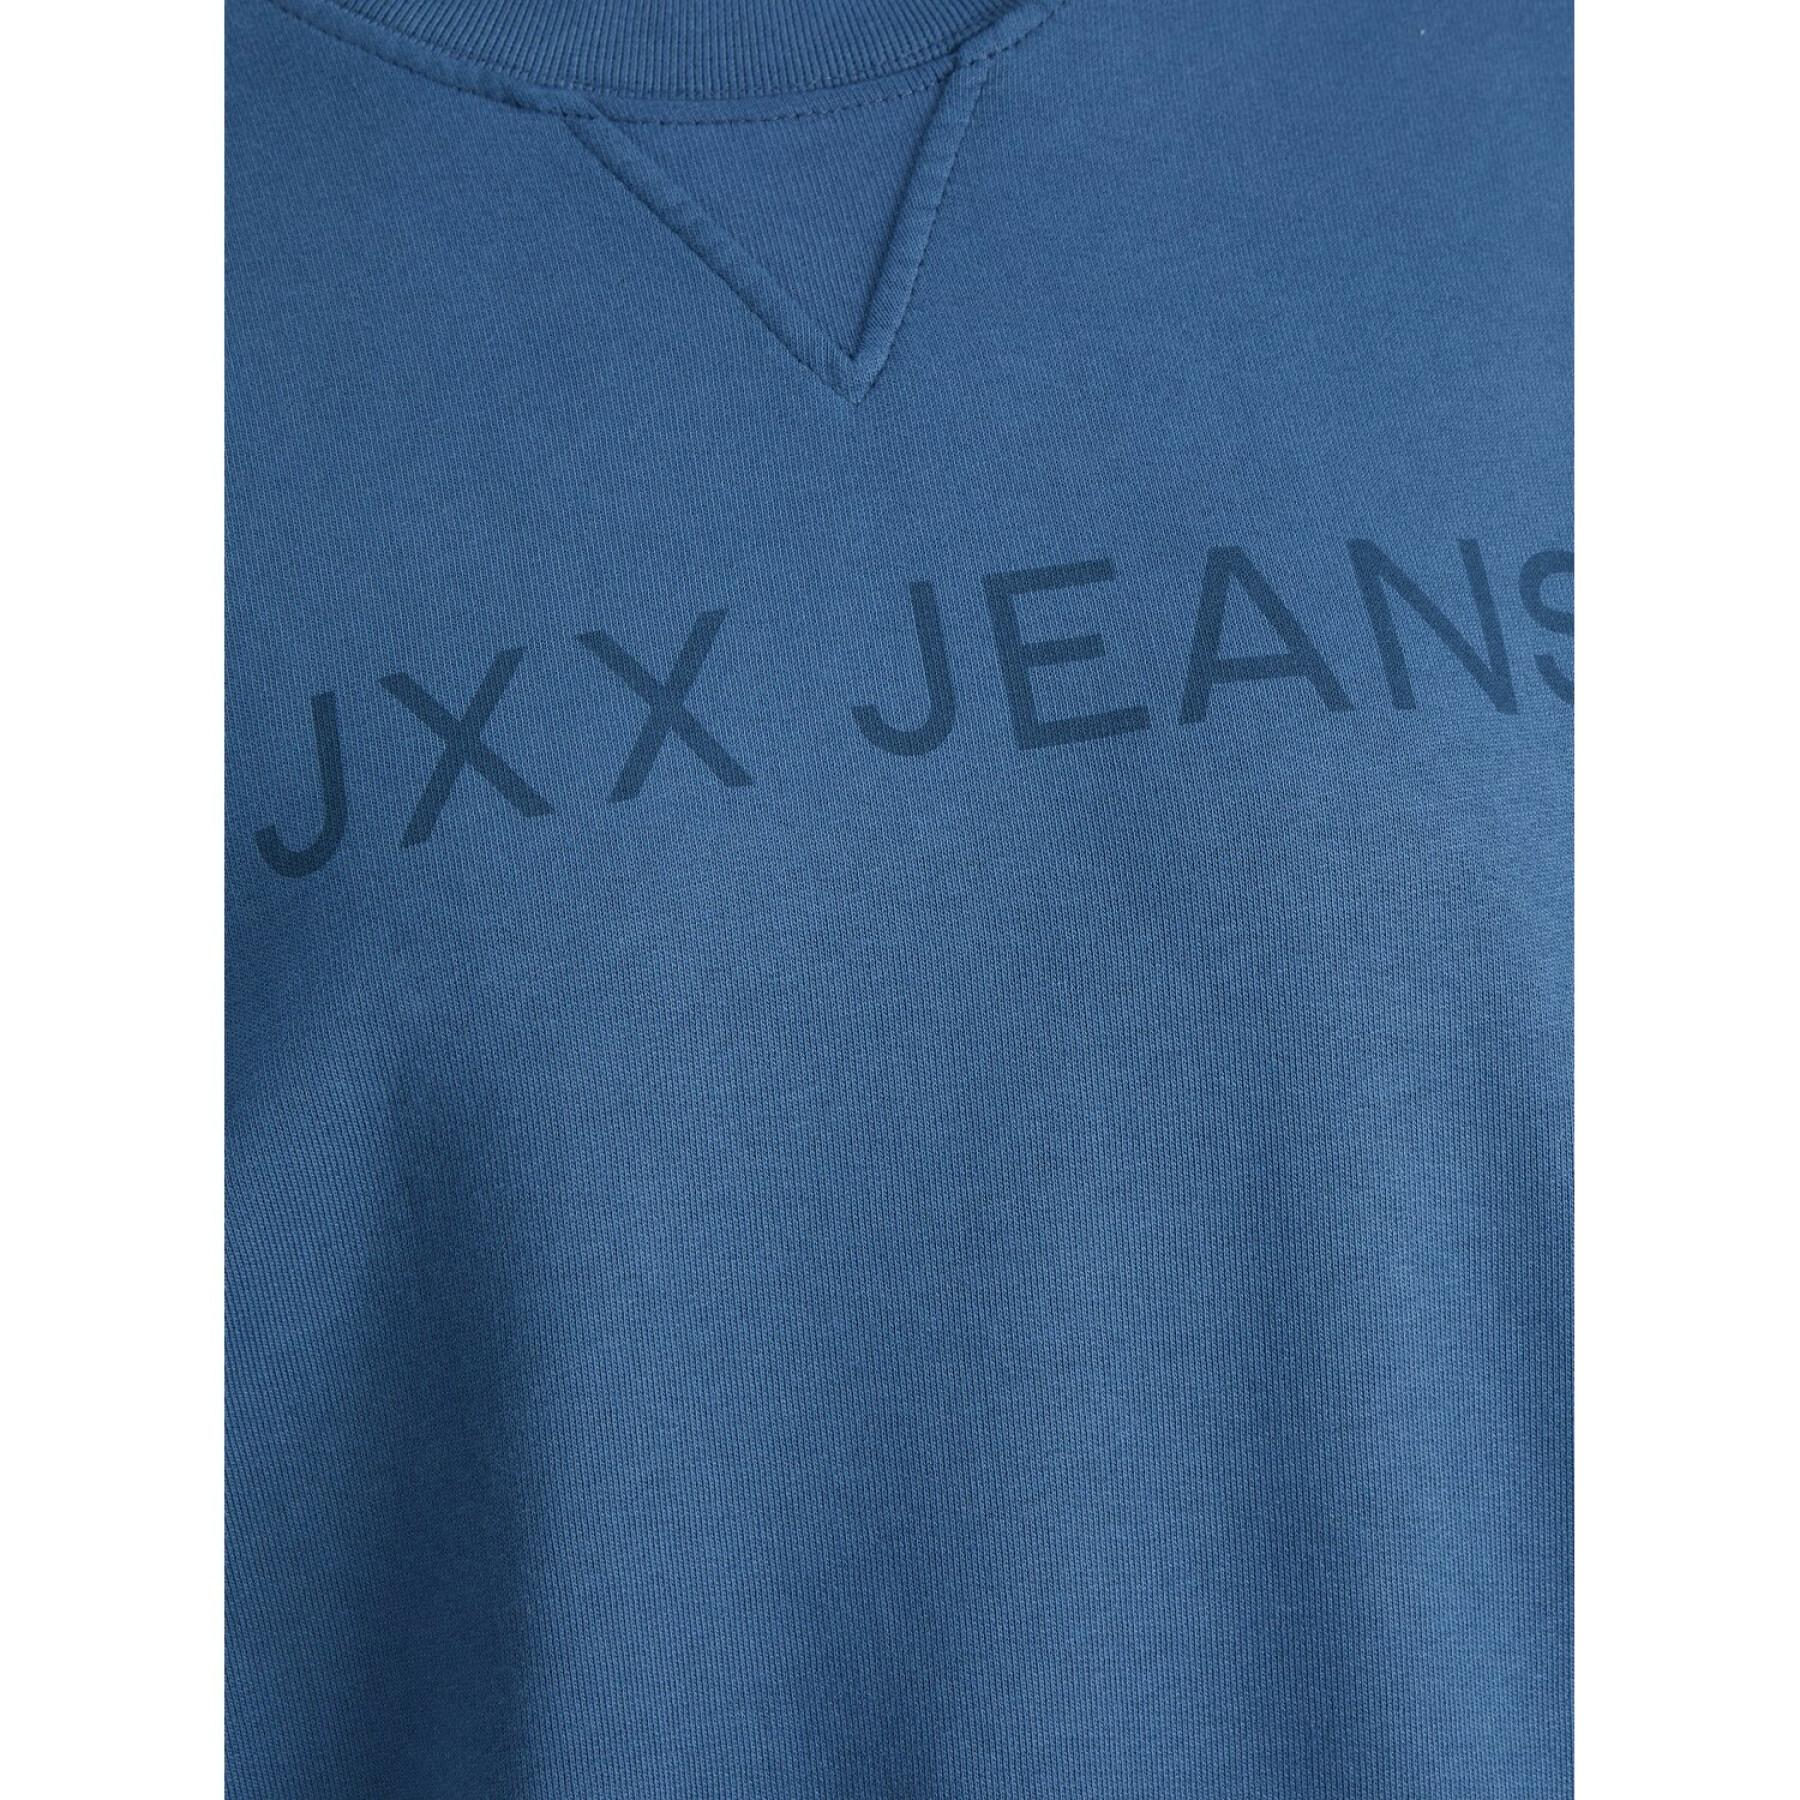 Sweatshirt large femme JJXX dee